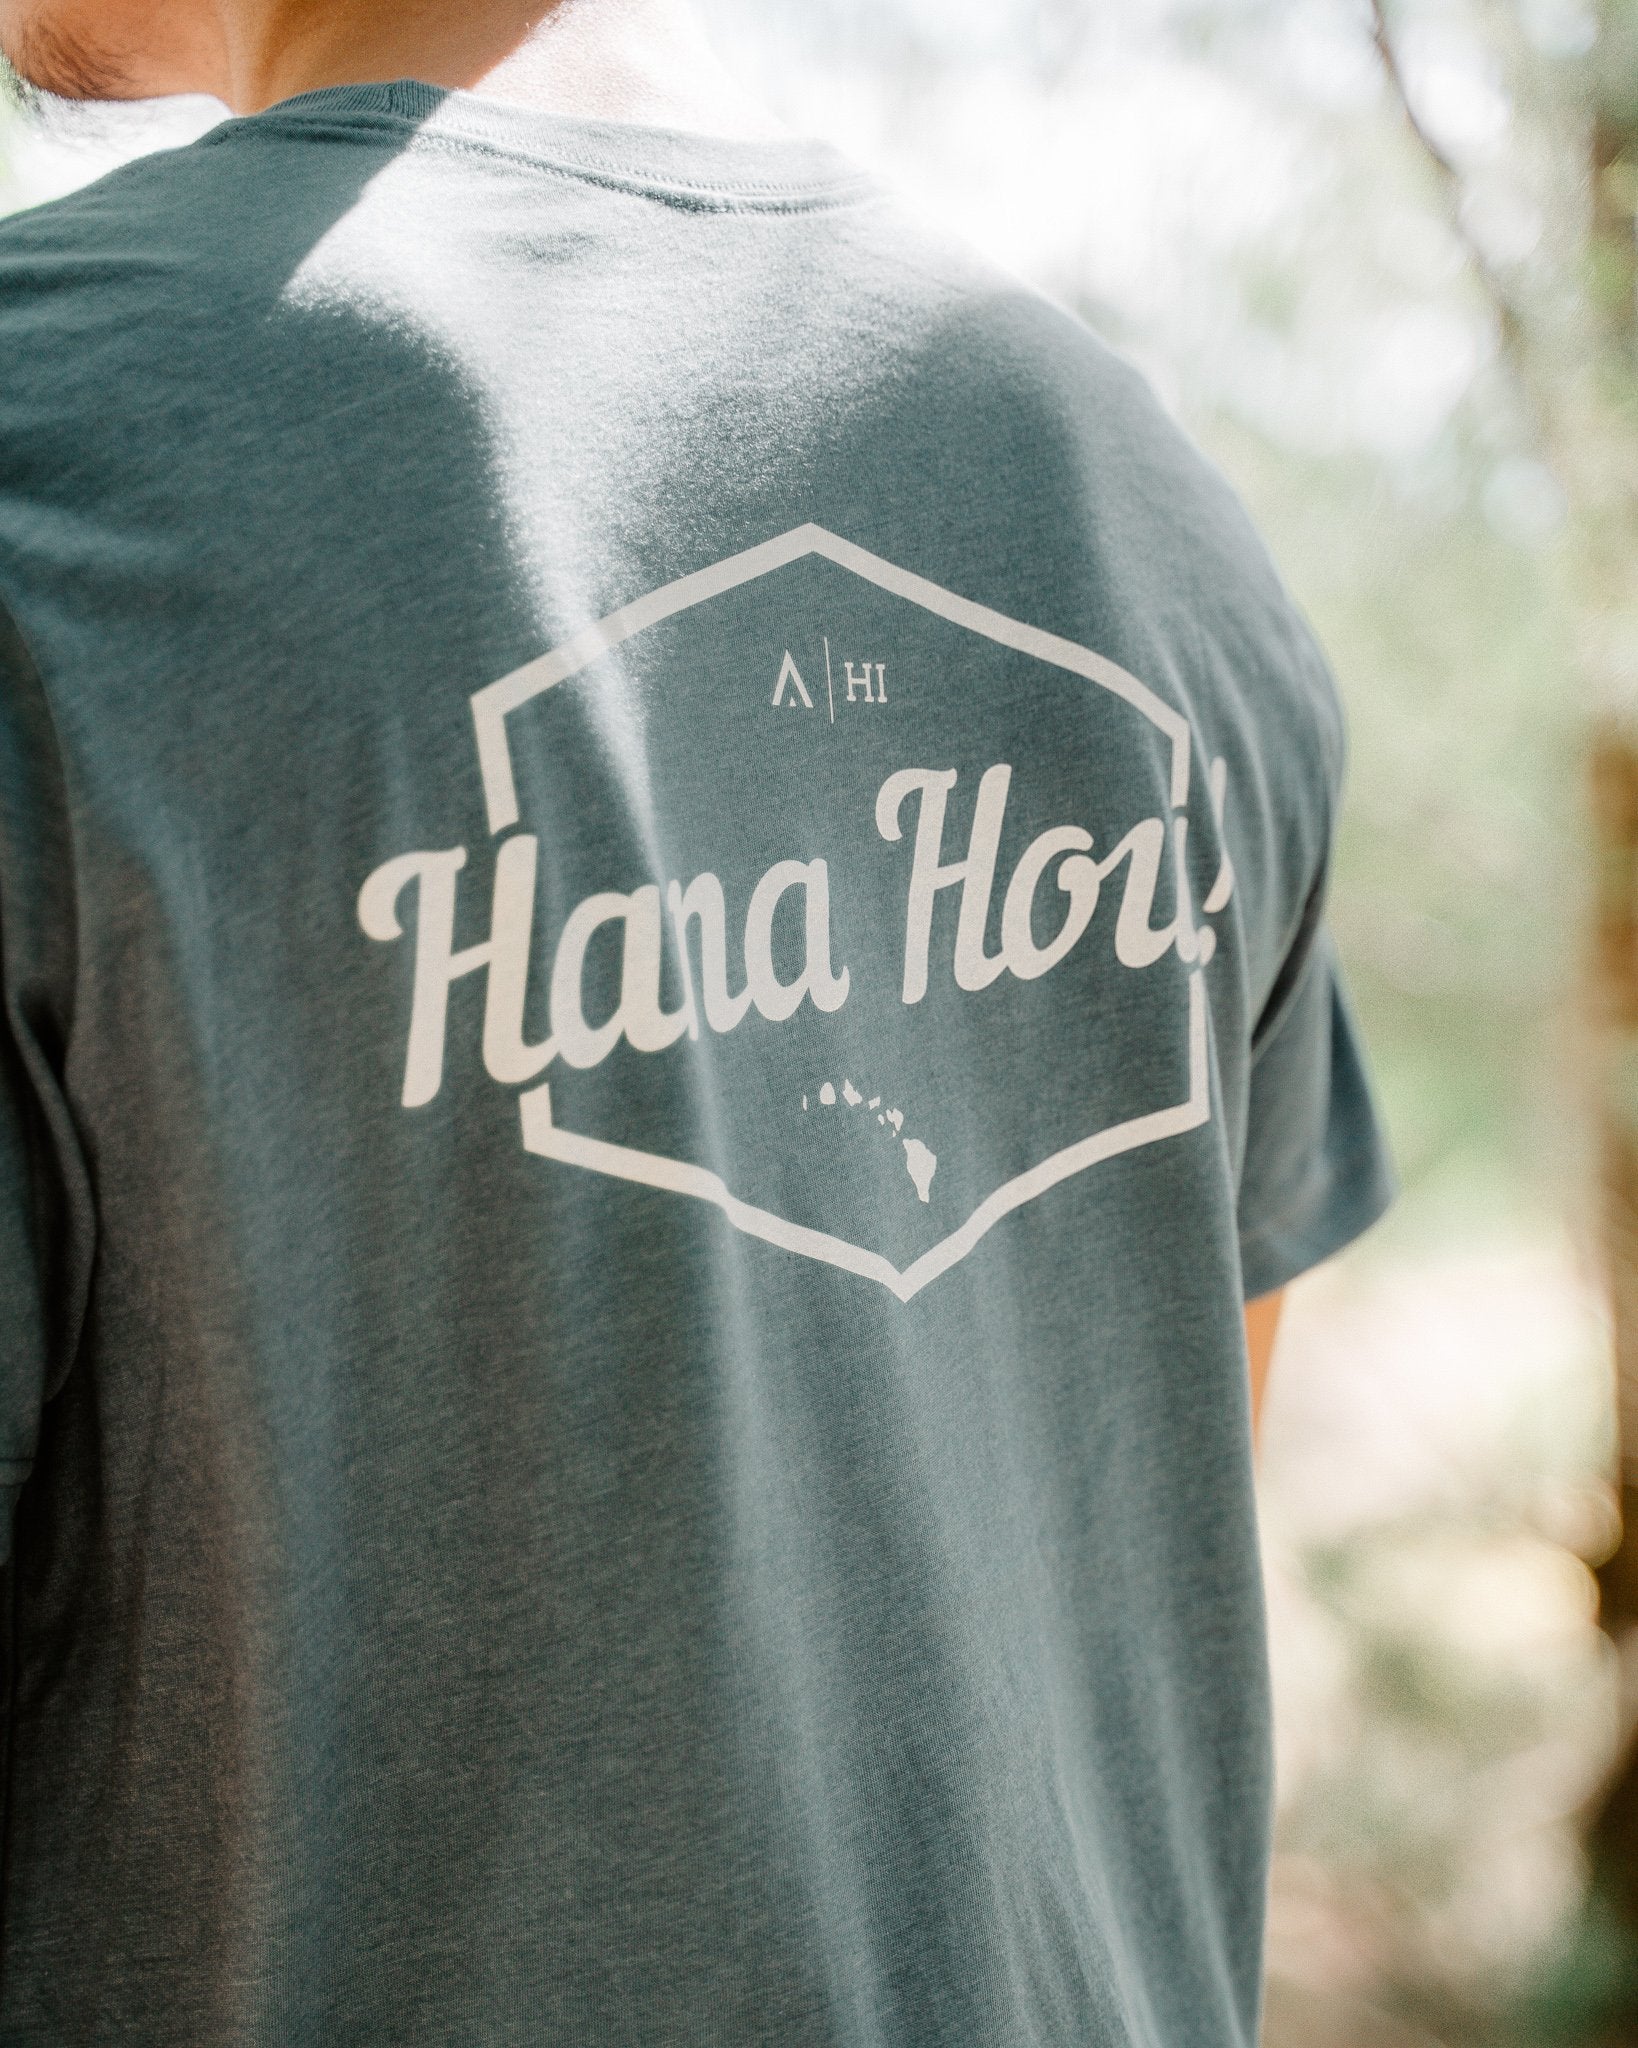 Pop-Up Mākeke - Aloha Ke Akua Clothing - Hana Hou Men's Short Sleeve T-Shirt - Heather Slate - In Use